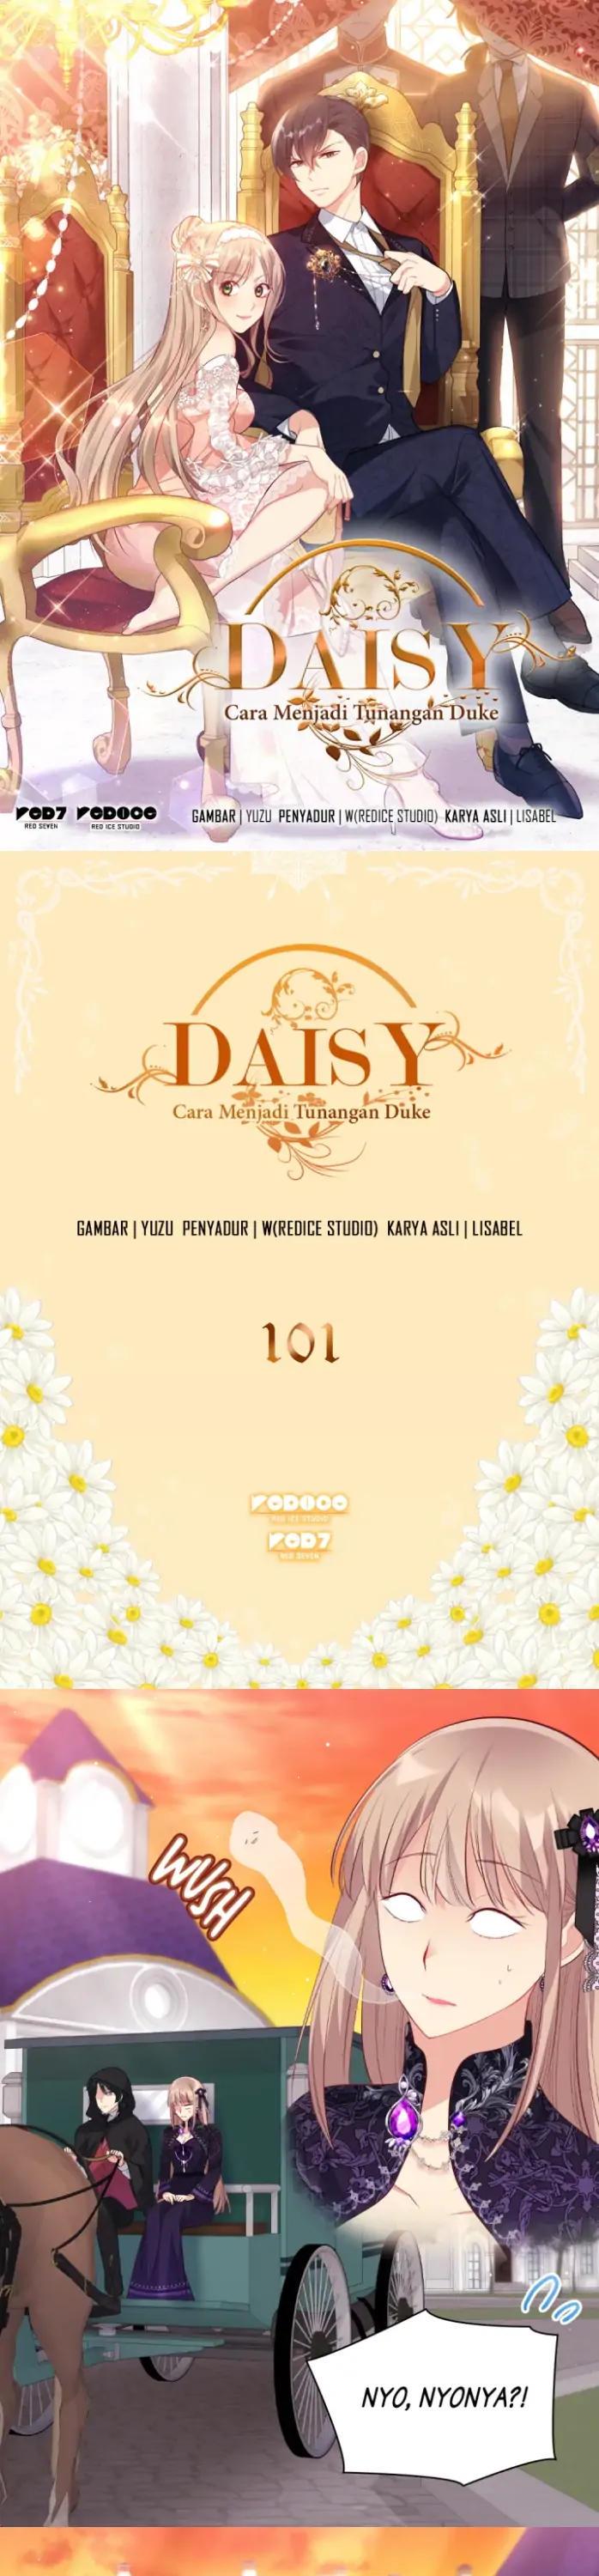 Daisy Chapter 101